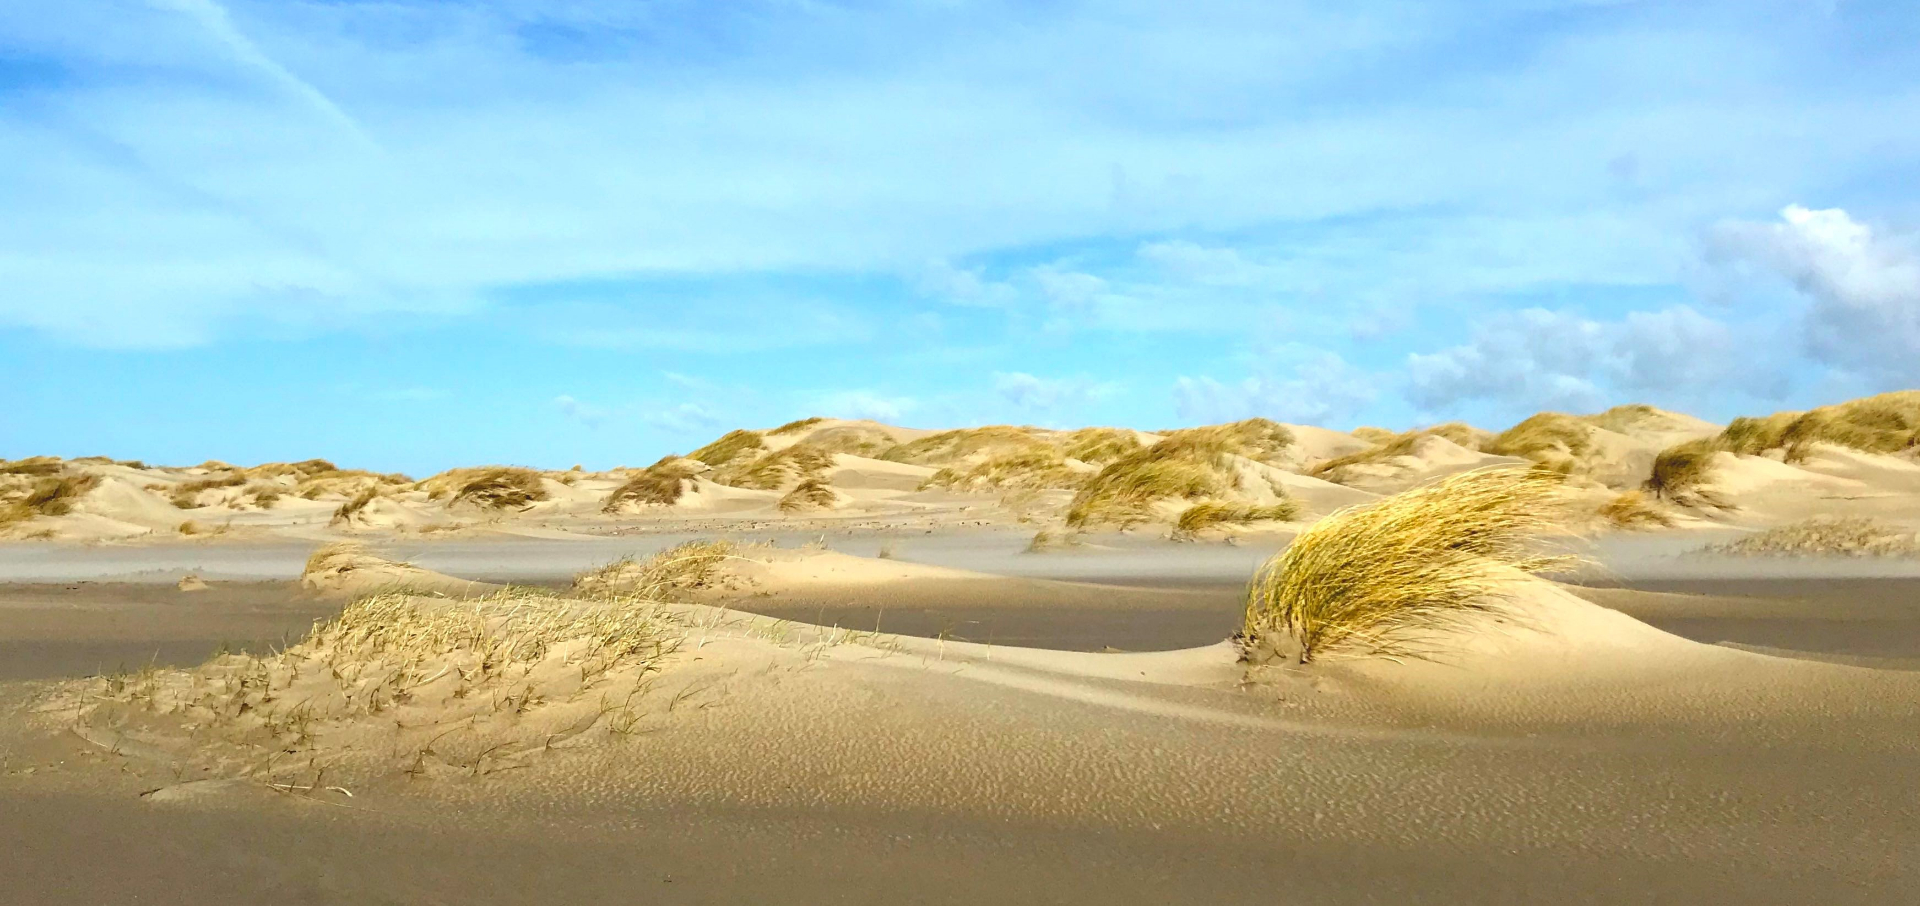 Biestarwegras (links) bouwt met een verspreide groeistrategie lage, brede duinen. Helmgras (rechts) vangt meer lokaal zand in, wat resulteert in een hogere duin. Locatie: De Hors, Texel. Credits: Valérie Reijers 